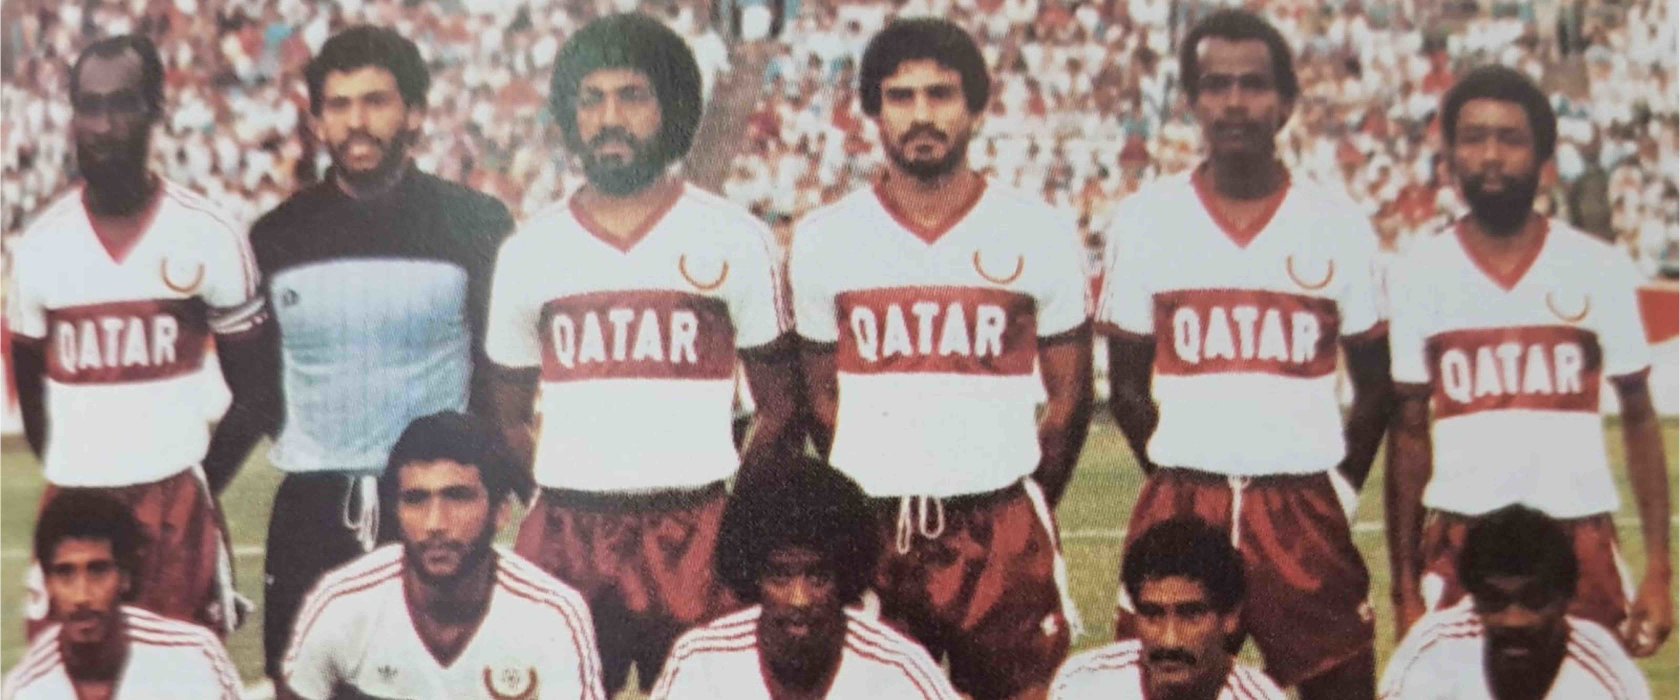 مقال رأي سرد تاريخ كرة القدم الرائع في قطر مهم أكثر من أي وقت مضى مؤسسة قطر